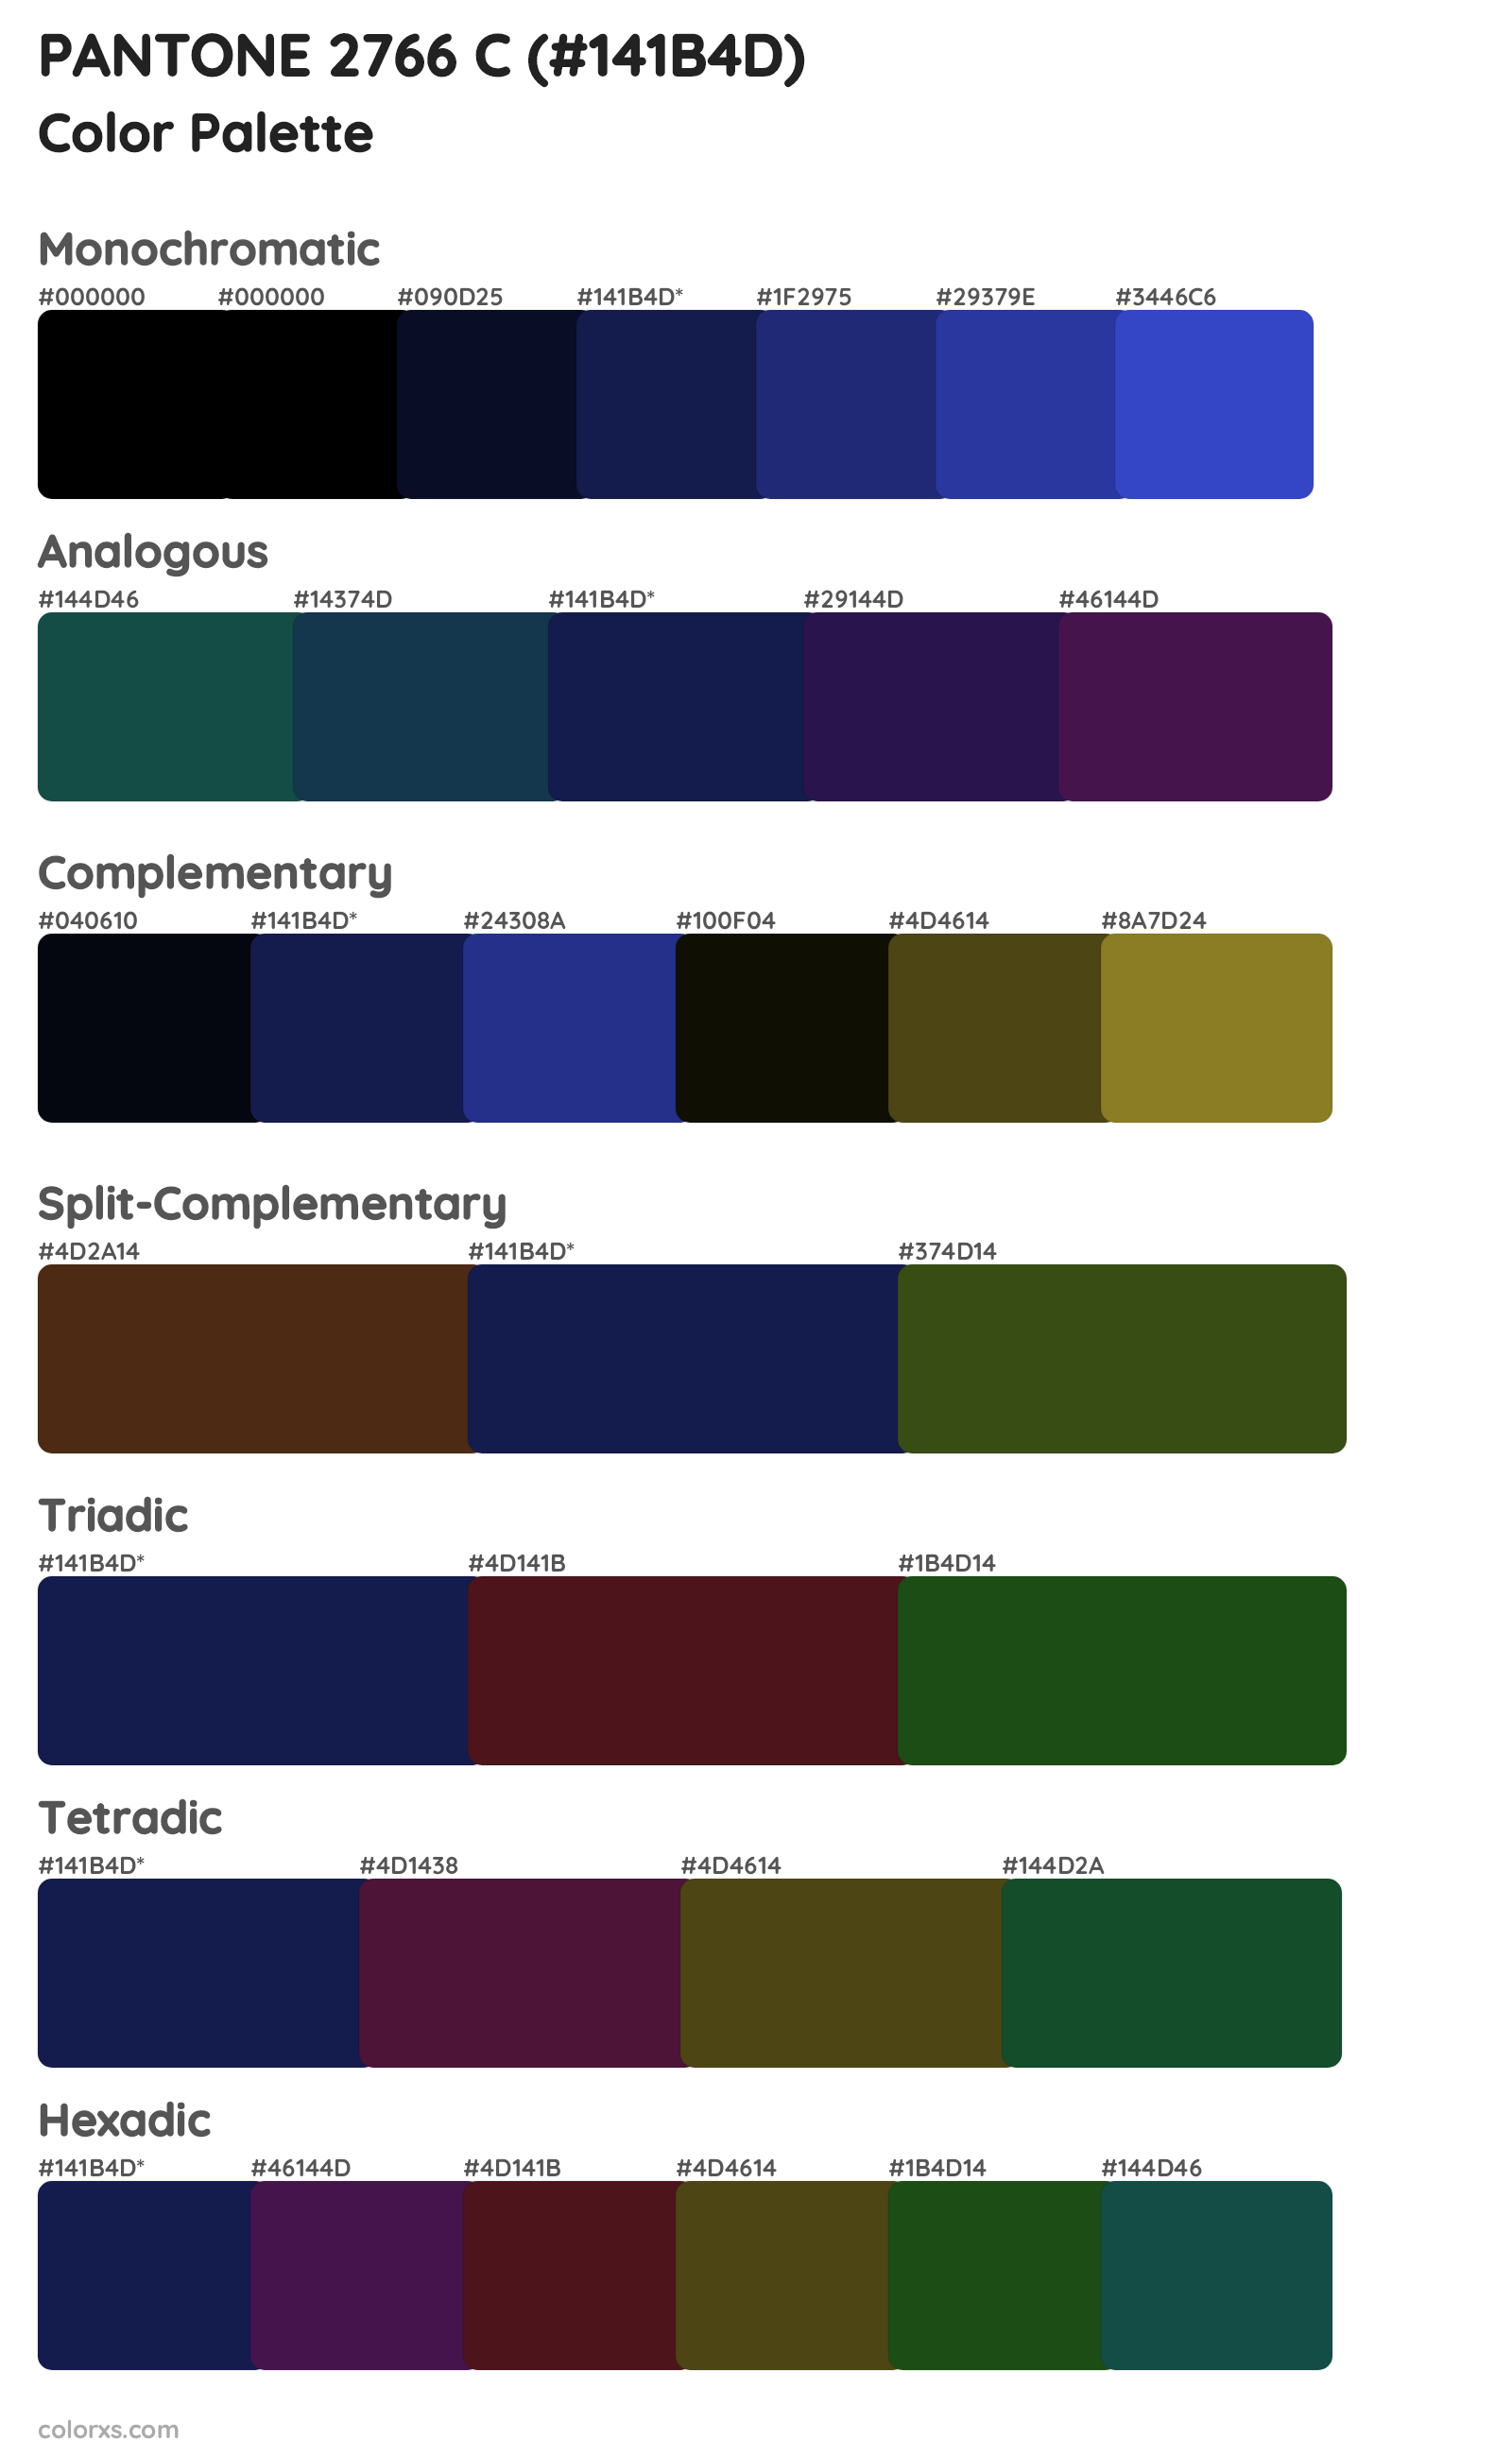 PANTONE 2766 C Color Scheme Palettes